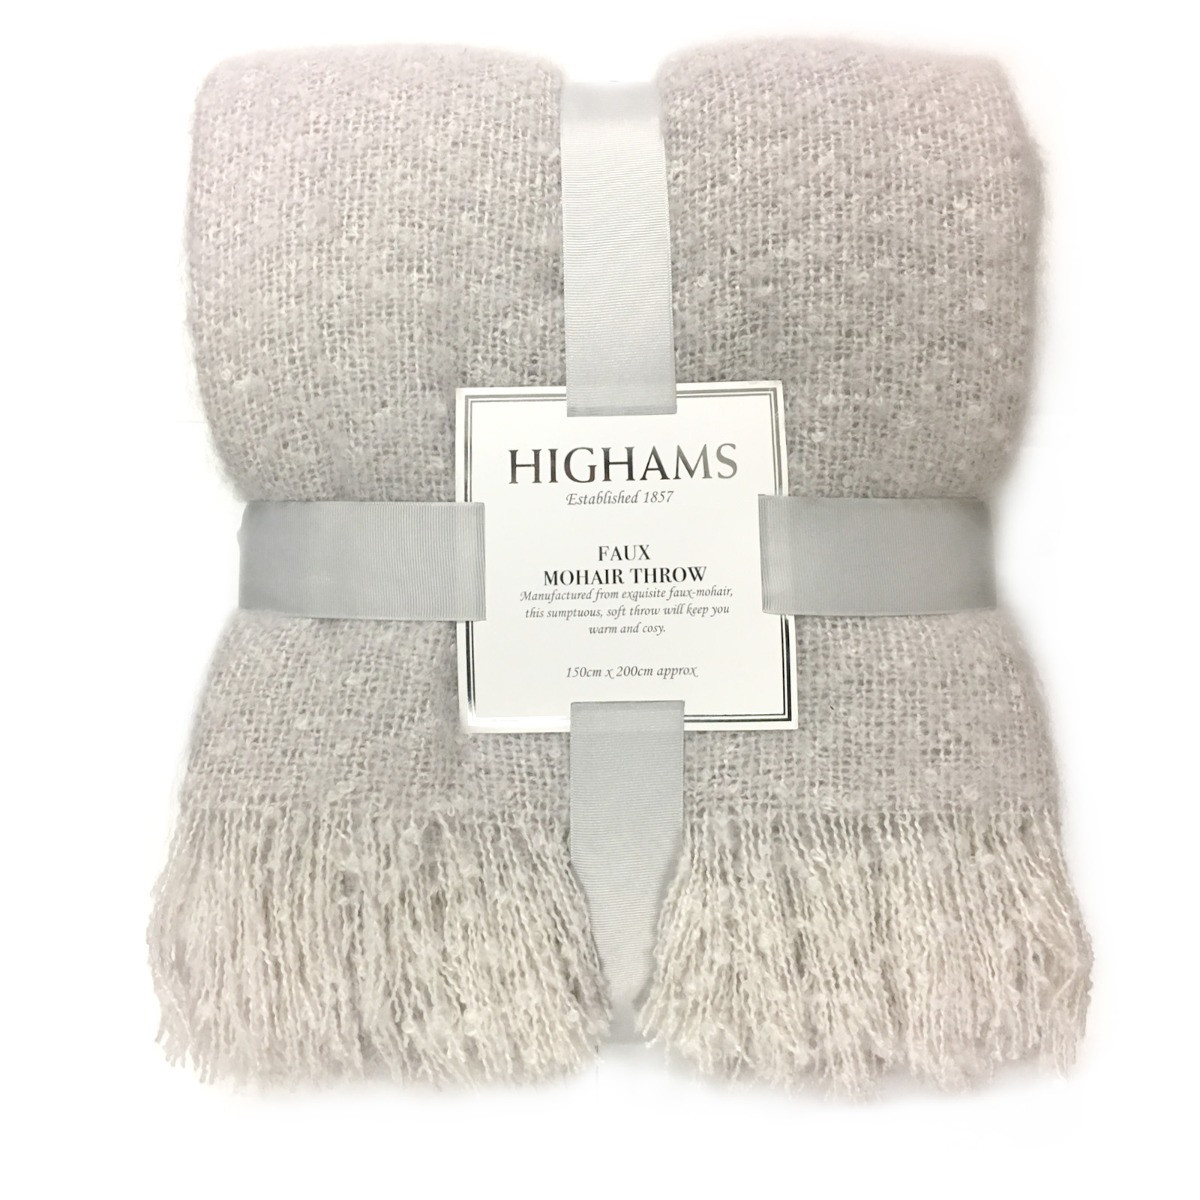 Highams Mohair Throw, Light Grey - 150 x 200cm>